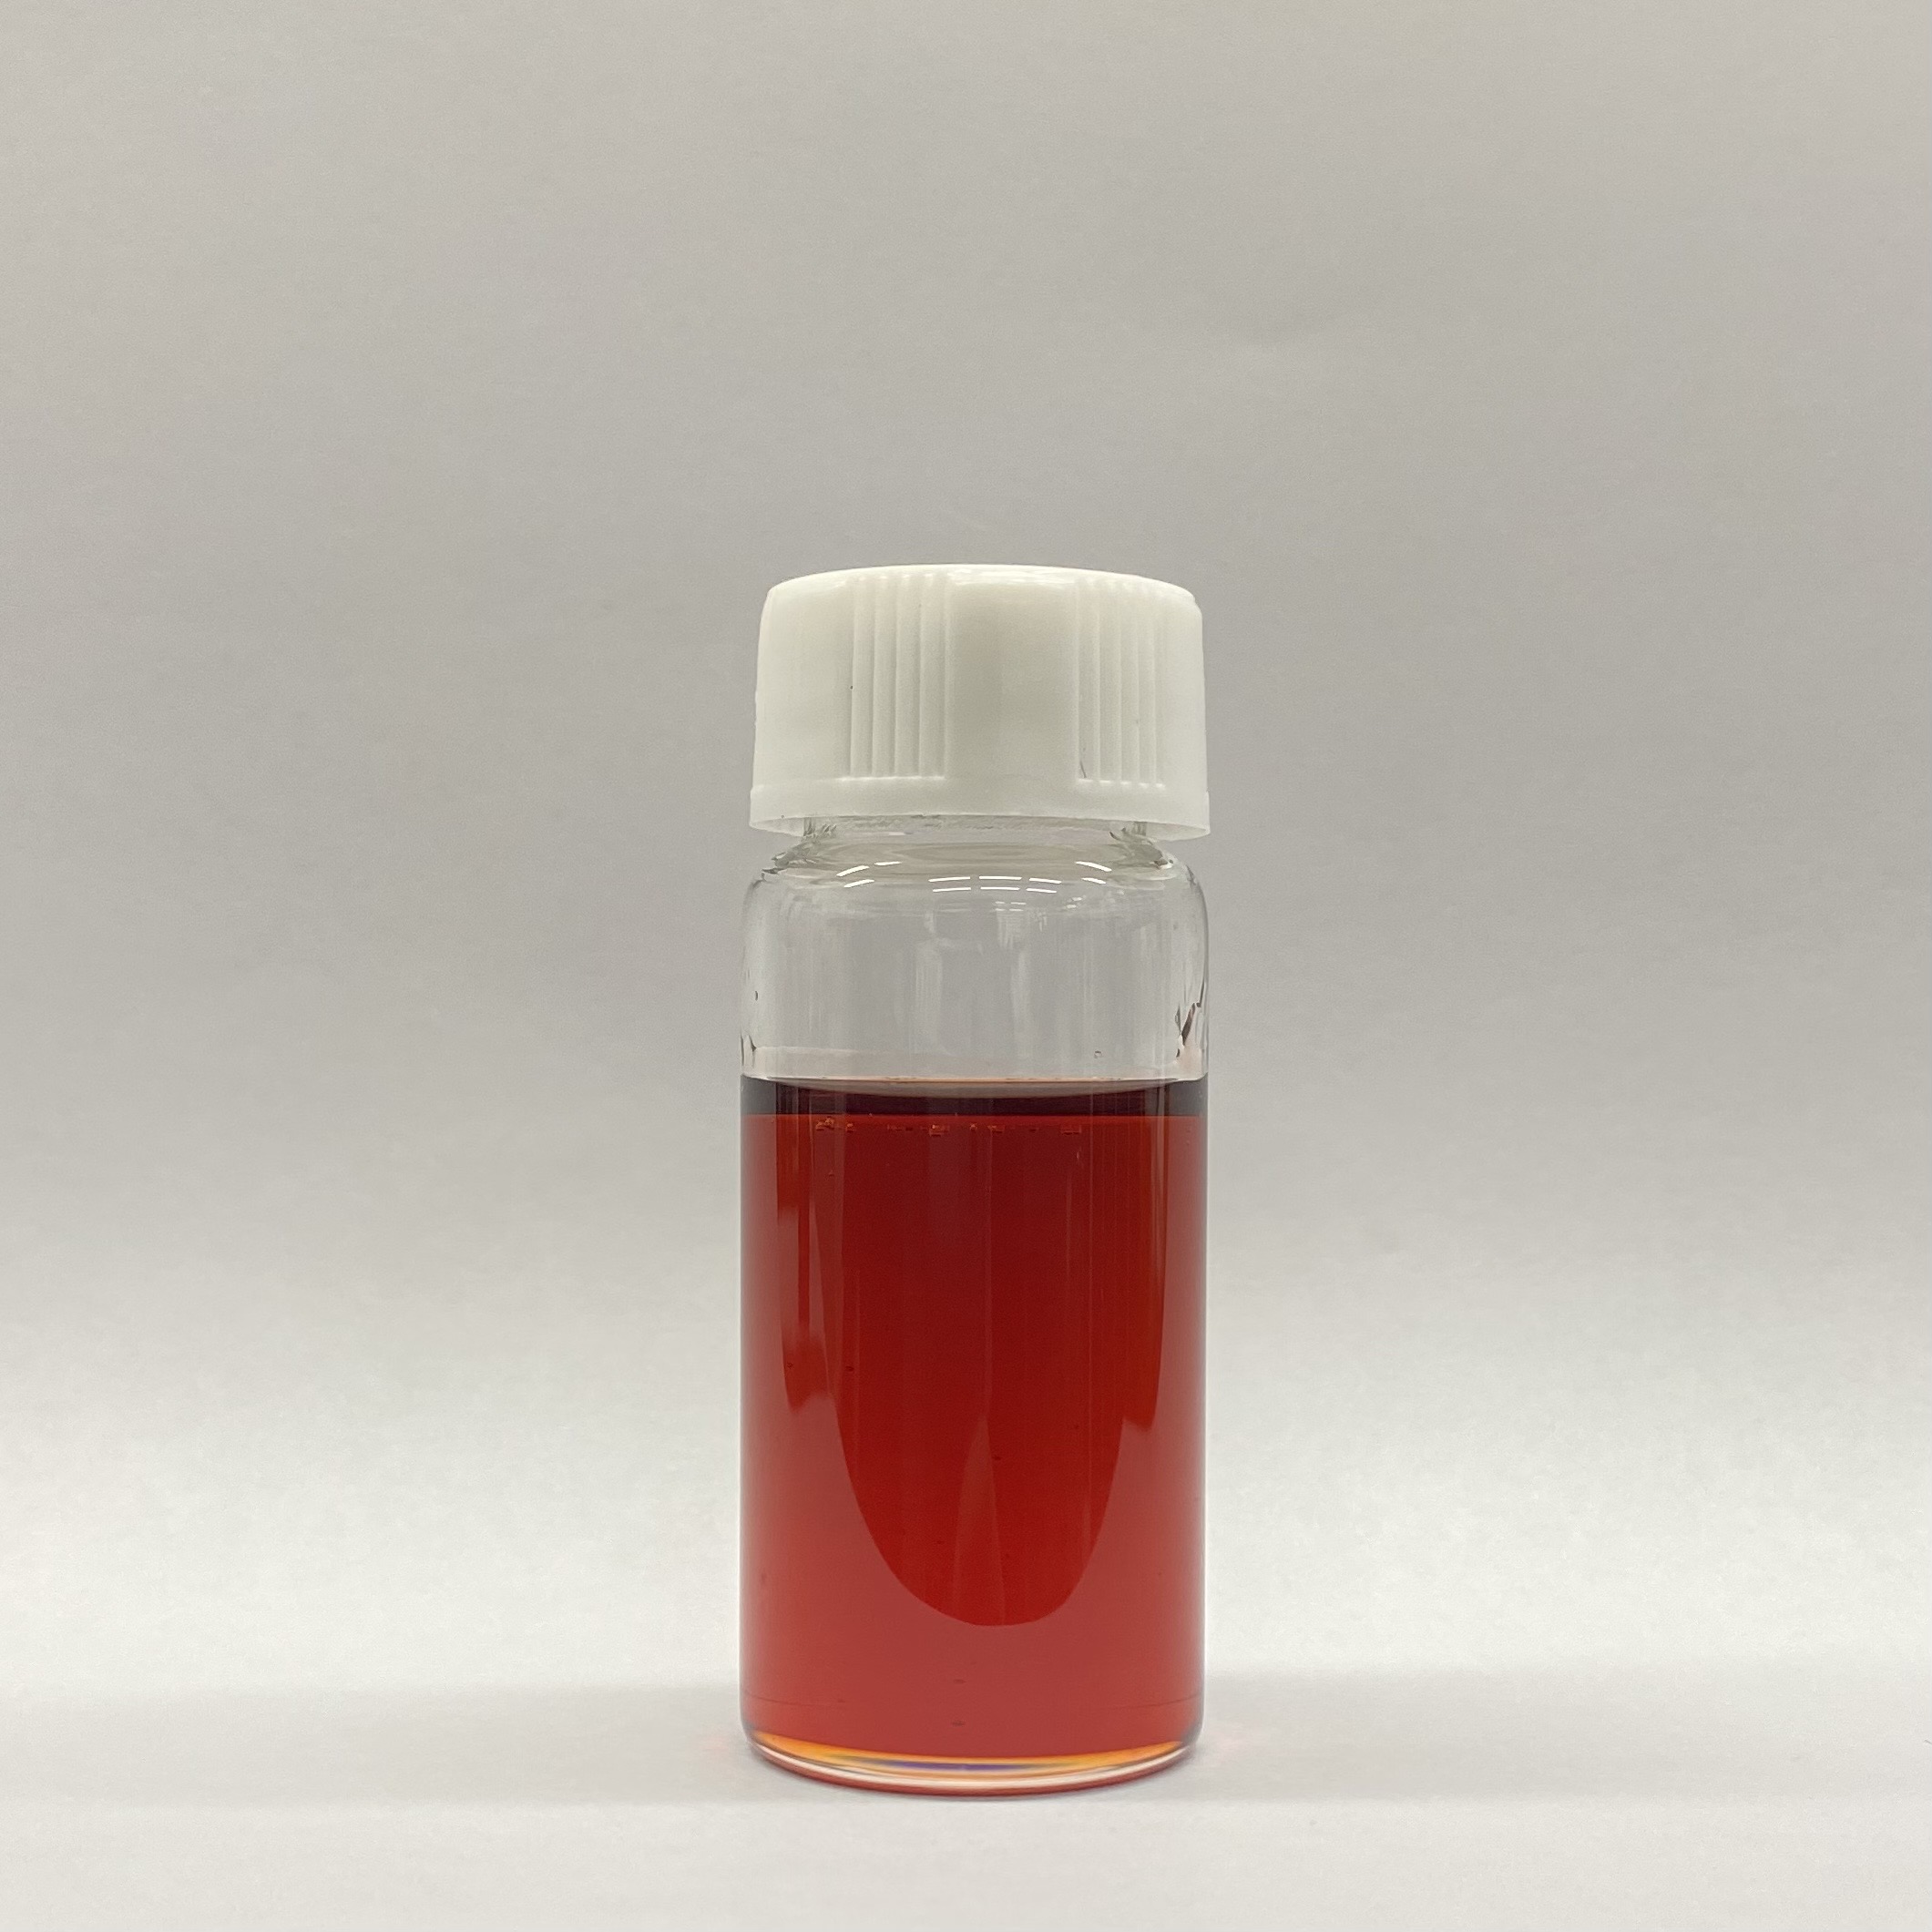 카다놀 기반 바이오폴리올 (Cardanol based bio polyol)